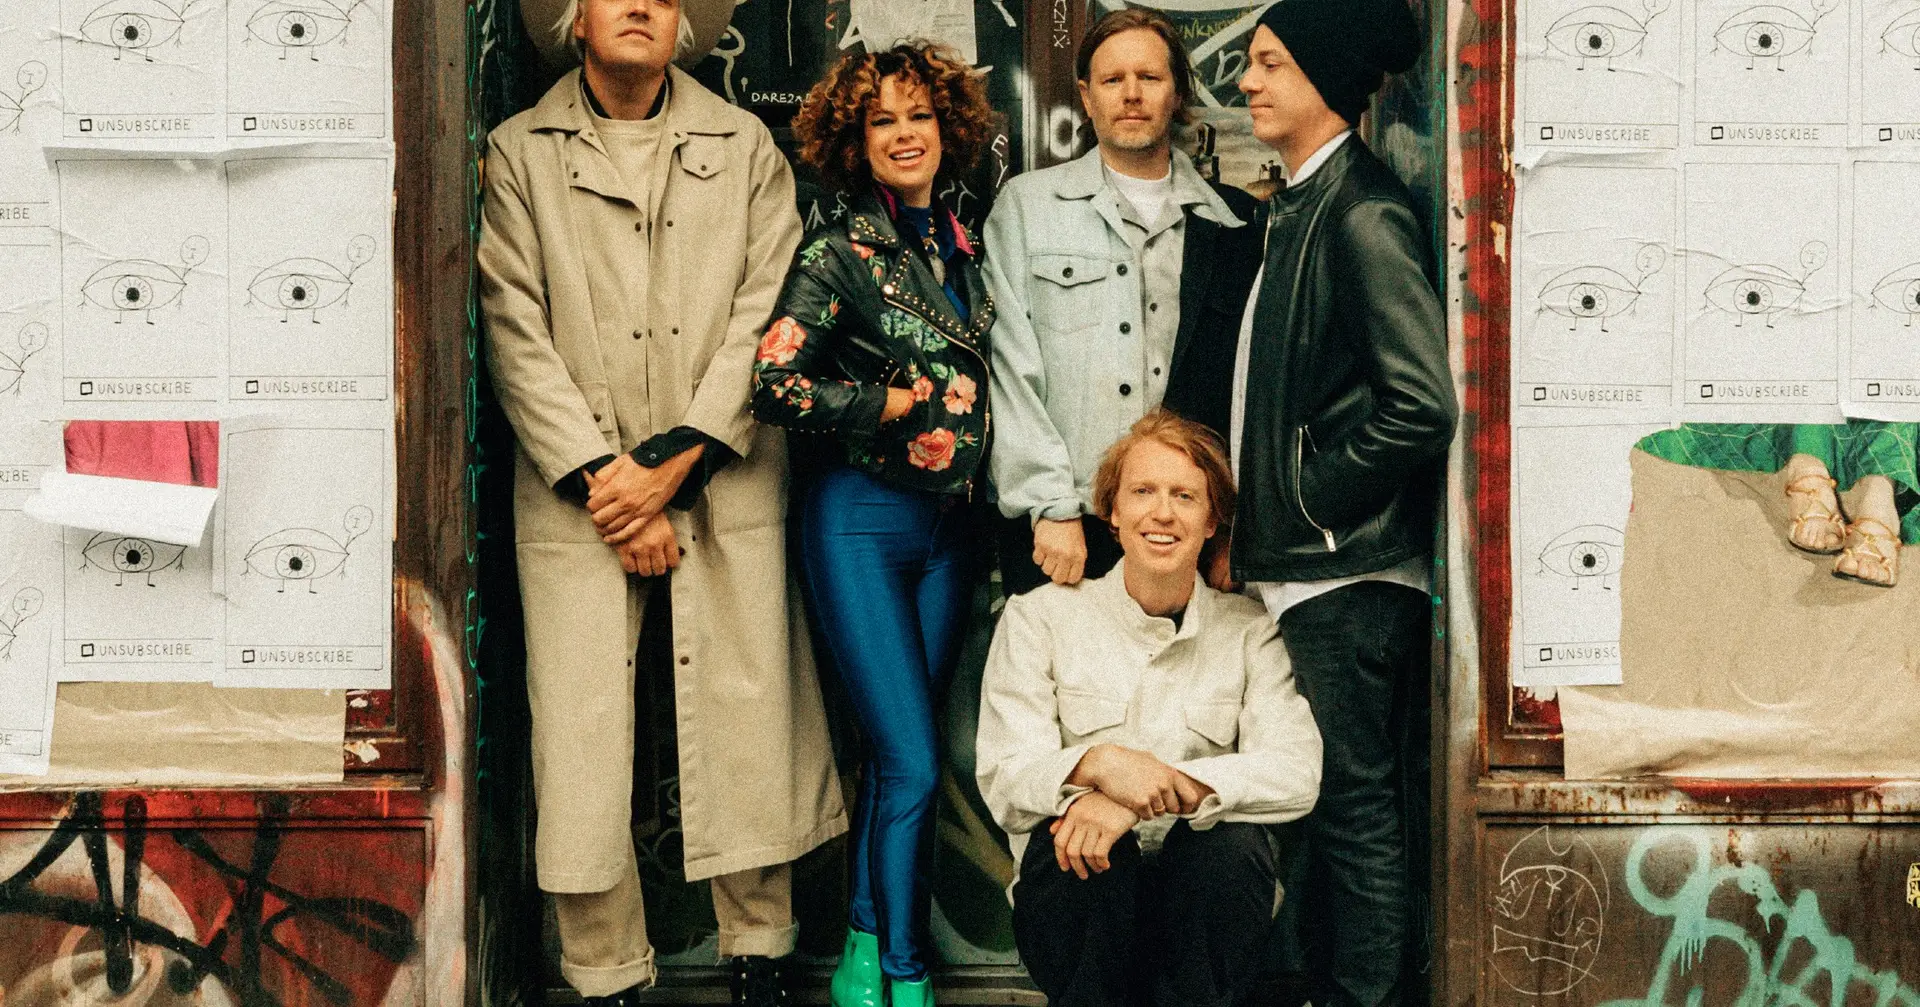 Os Arcade Fire têm a receita para o desmascarado mundo novo: “WE”, um álbum de êxtase e libertação (e nós já o ouvimos) - Expresso